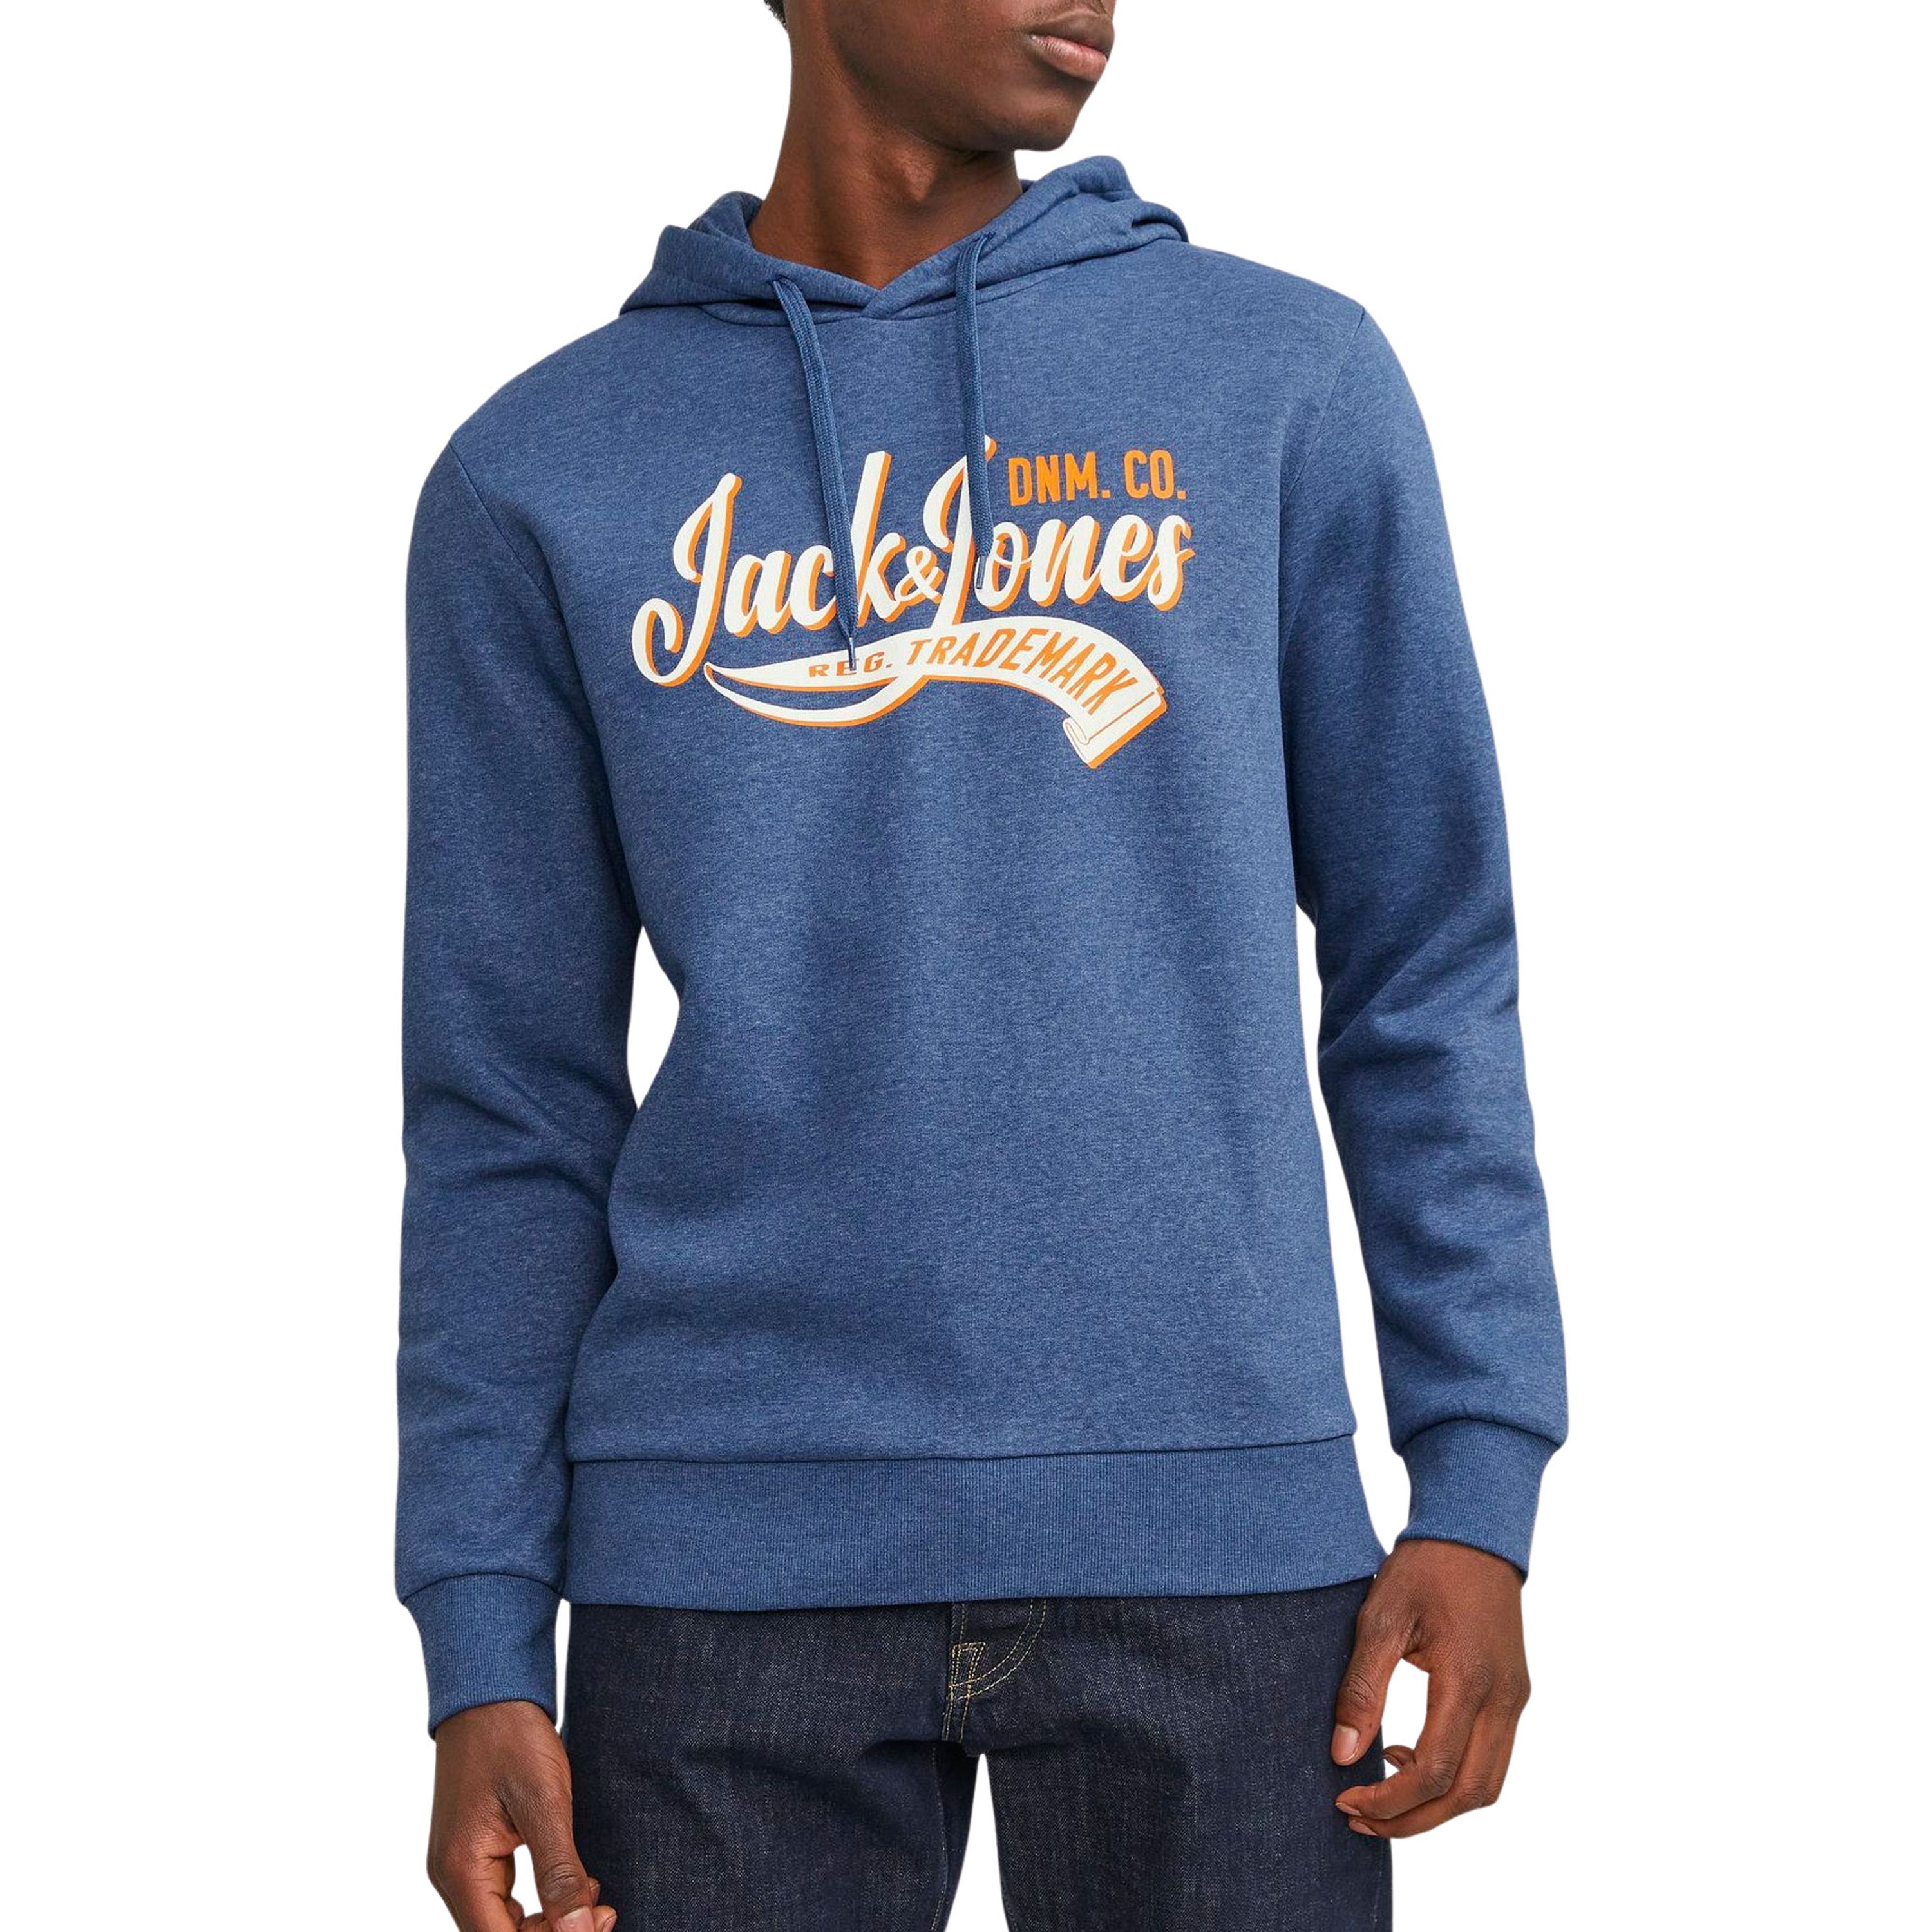 Jack & jones Sweater Jack & Jones JJELOGO SWEAT HOOD 2 COL 23 24